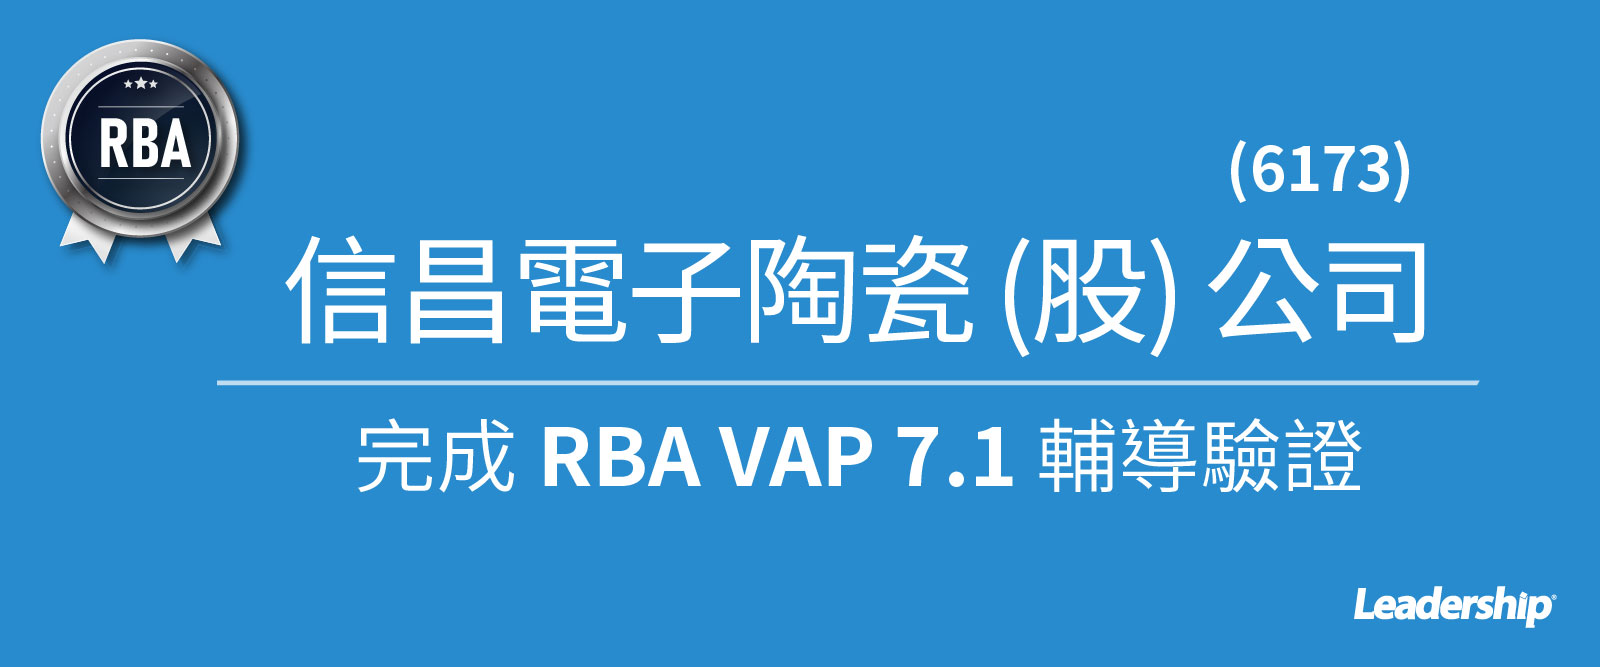 信昌電子陶瓷 (6173) 攜手領導力完成 RBA VAP 7.1 輔導驗證